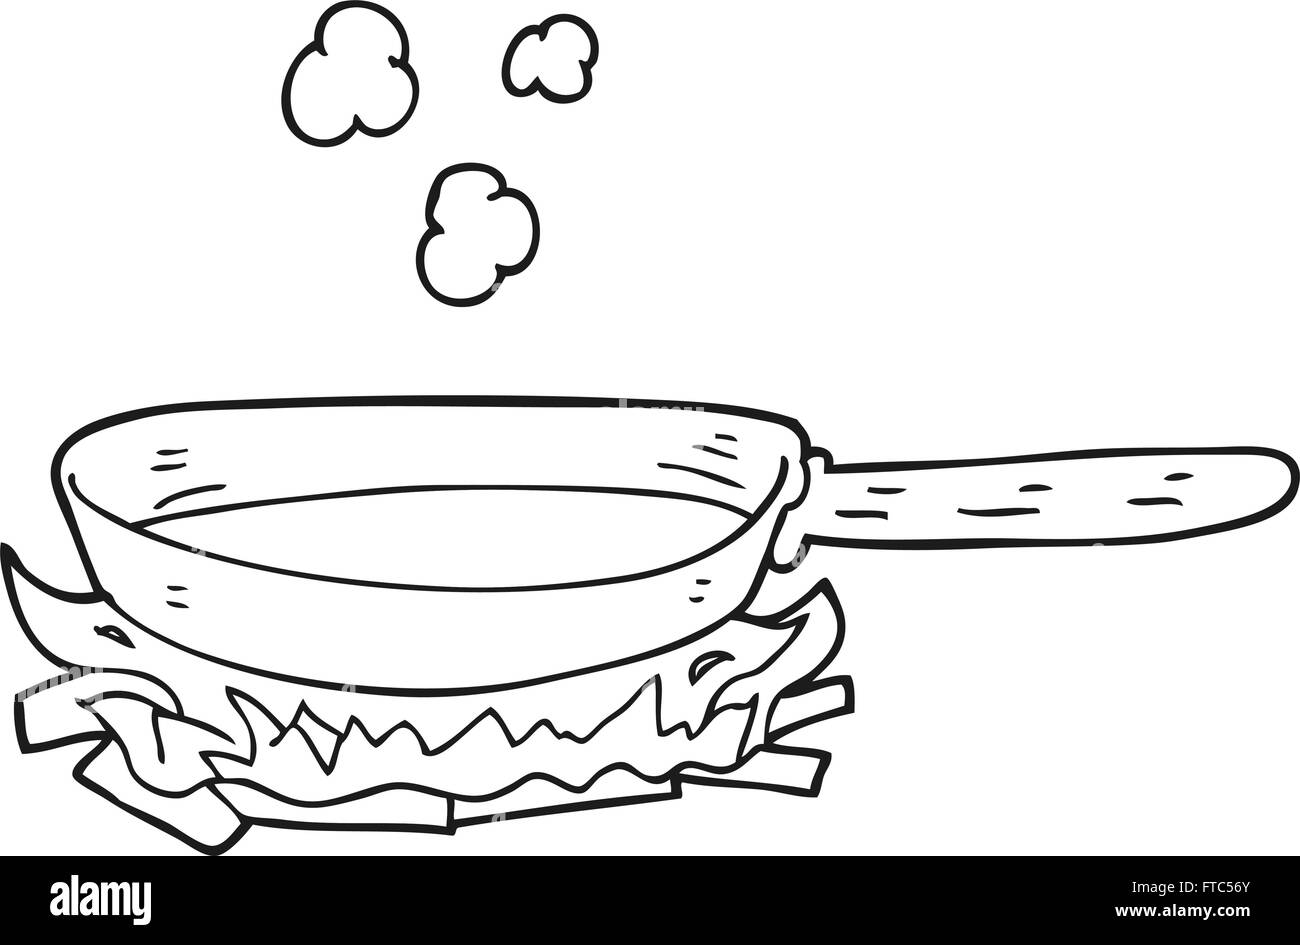 Freihändig gezeichnete schwarz-weiß Cartoon Pfanne in Brand  Stock-Vektorgrafik - Alamy